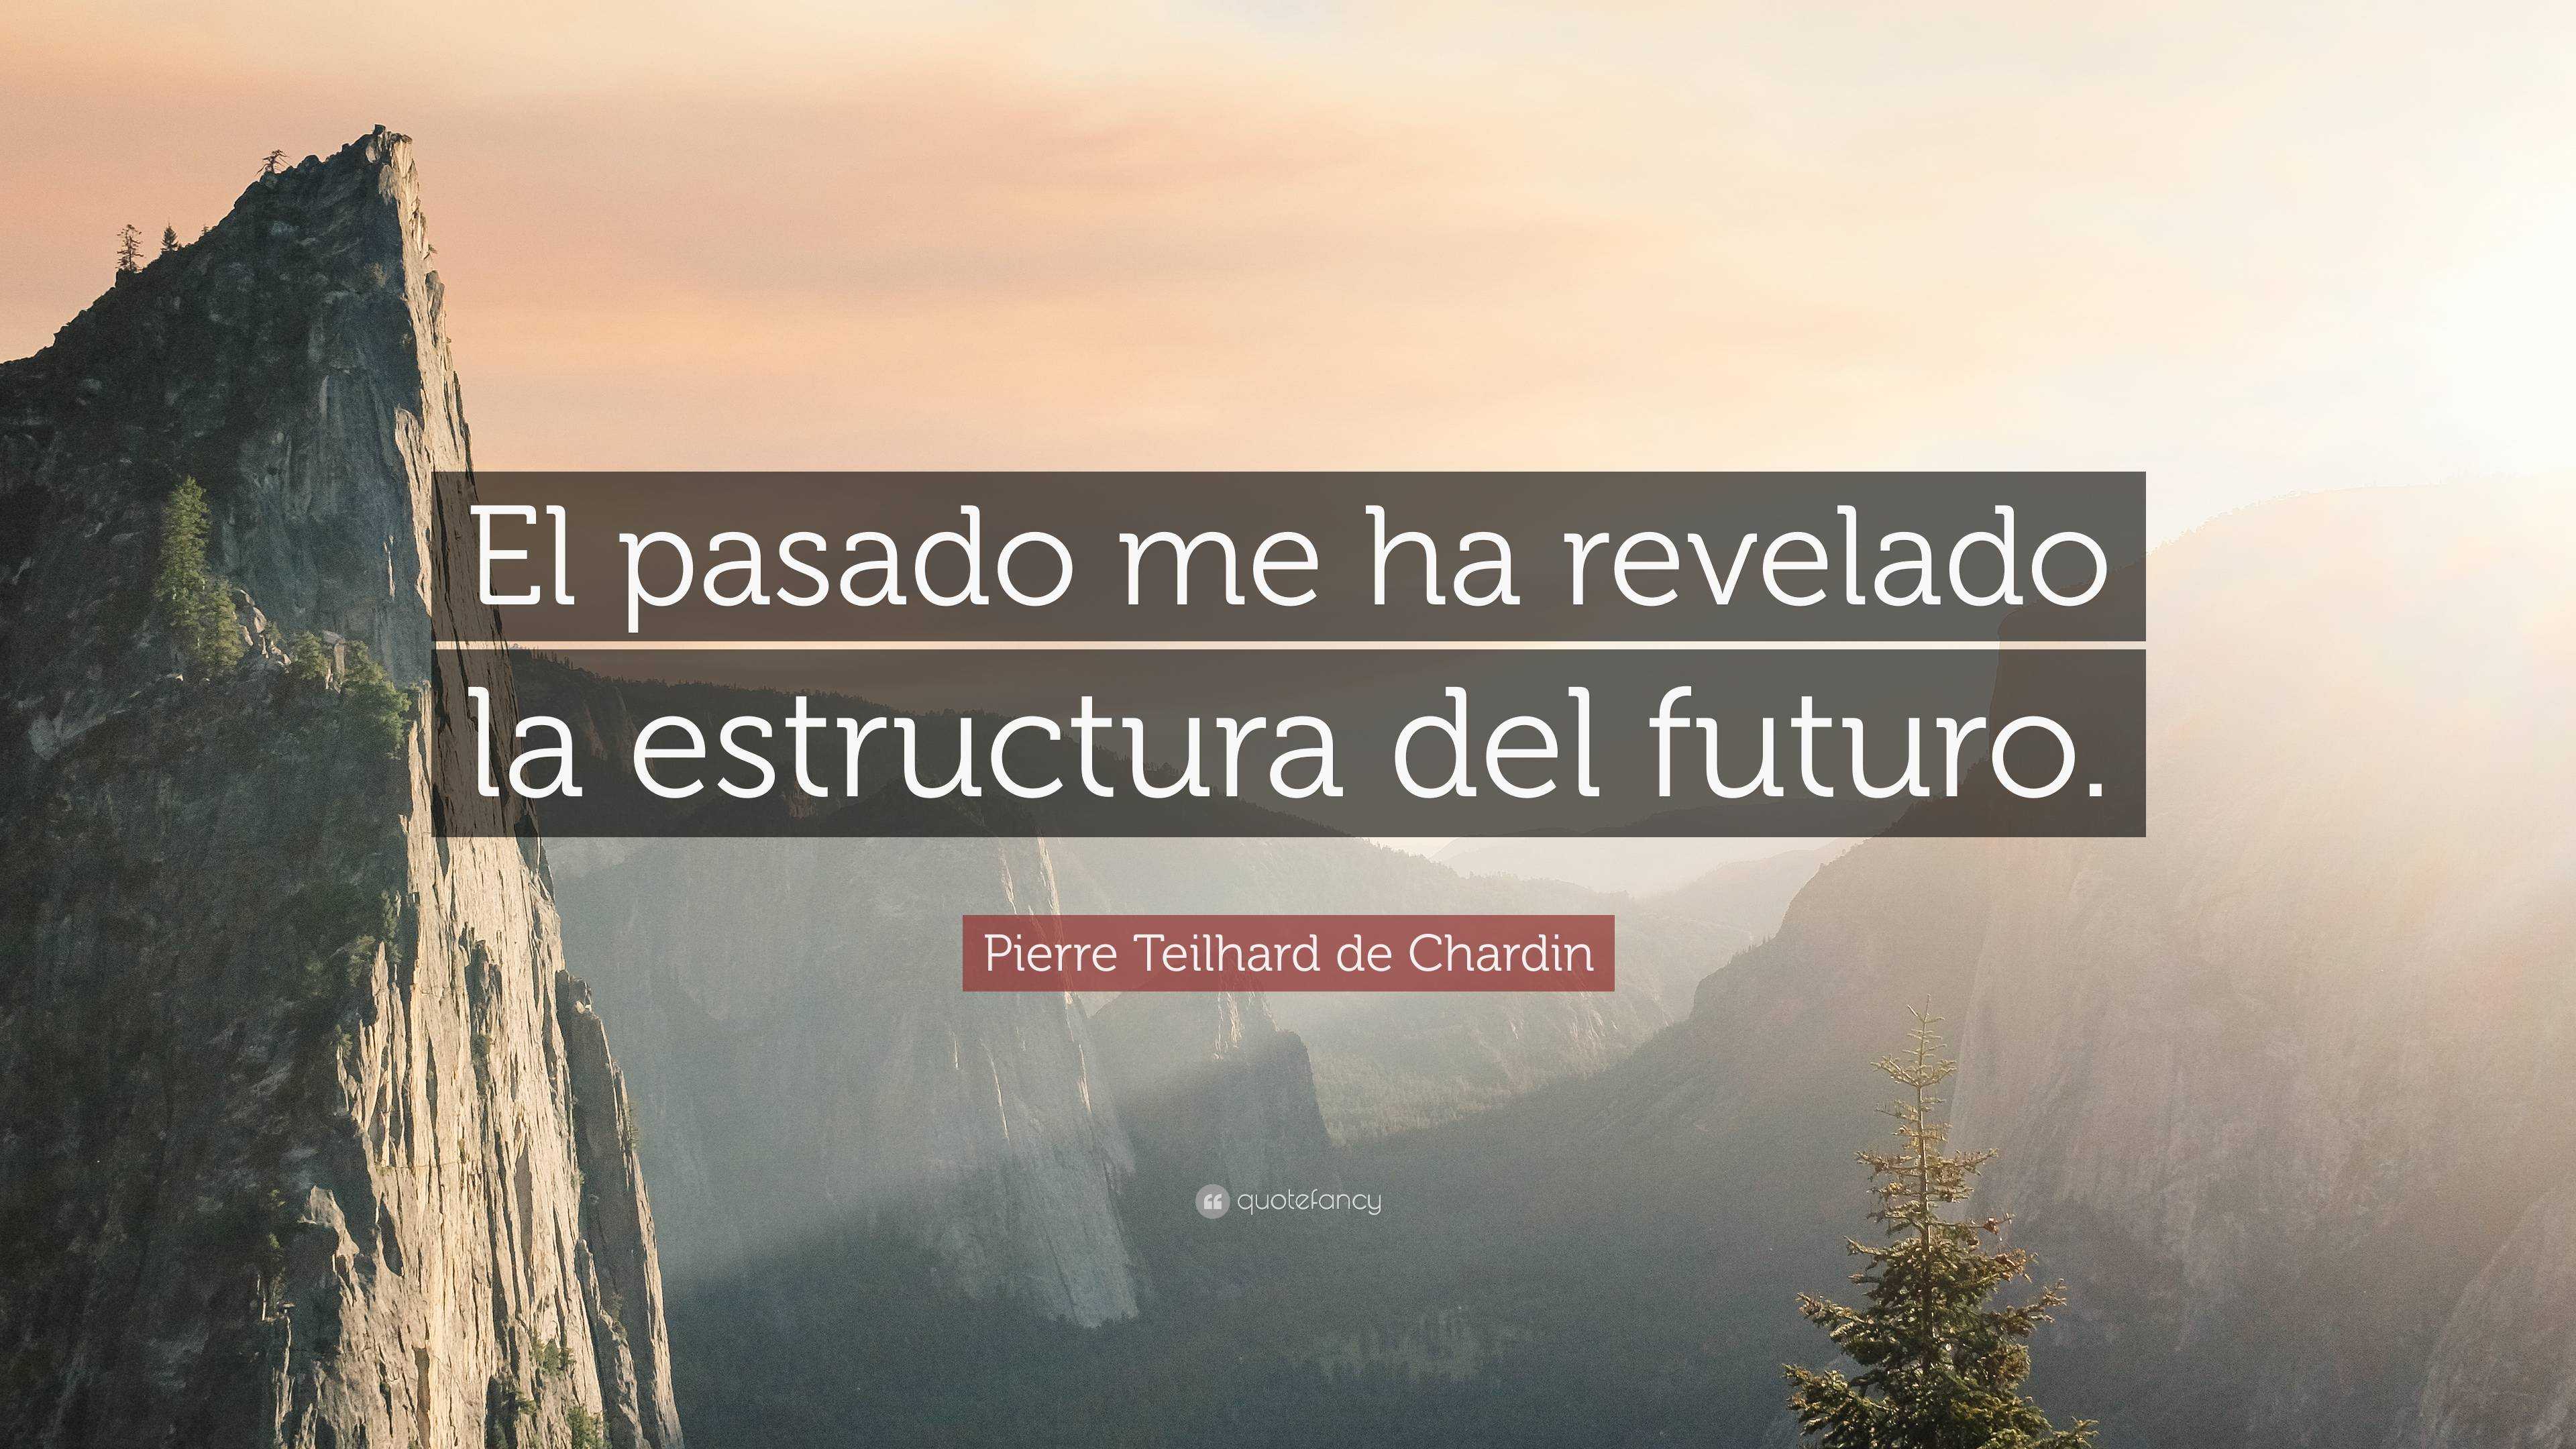 Pierre Teilhard de Chardin Quote: “El pasado me ha revelado la ...